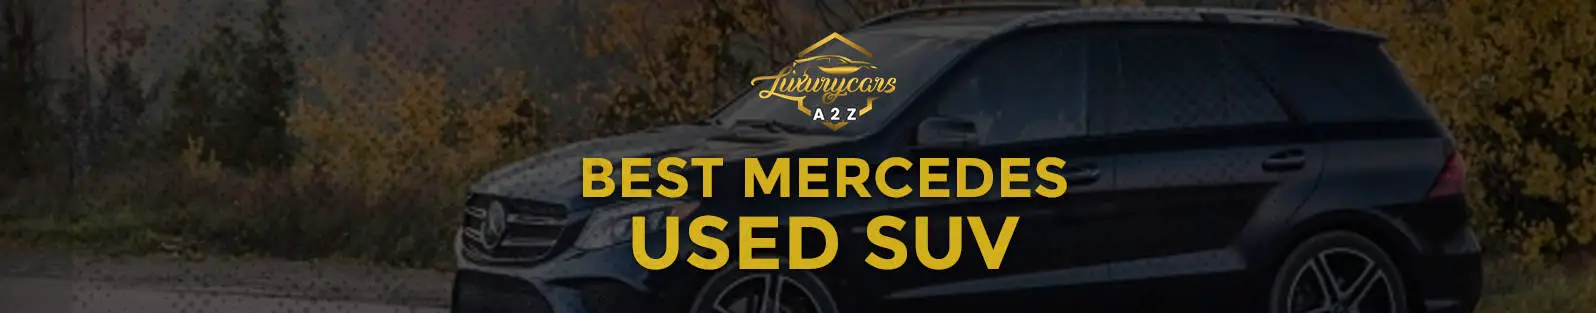 Meilleure Mercedes d'occasion en SUV